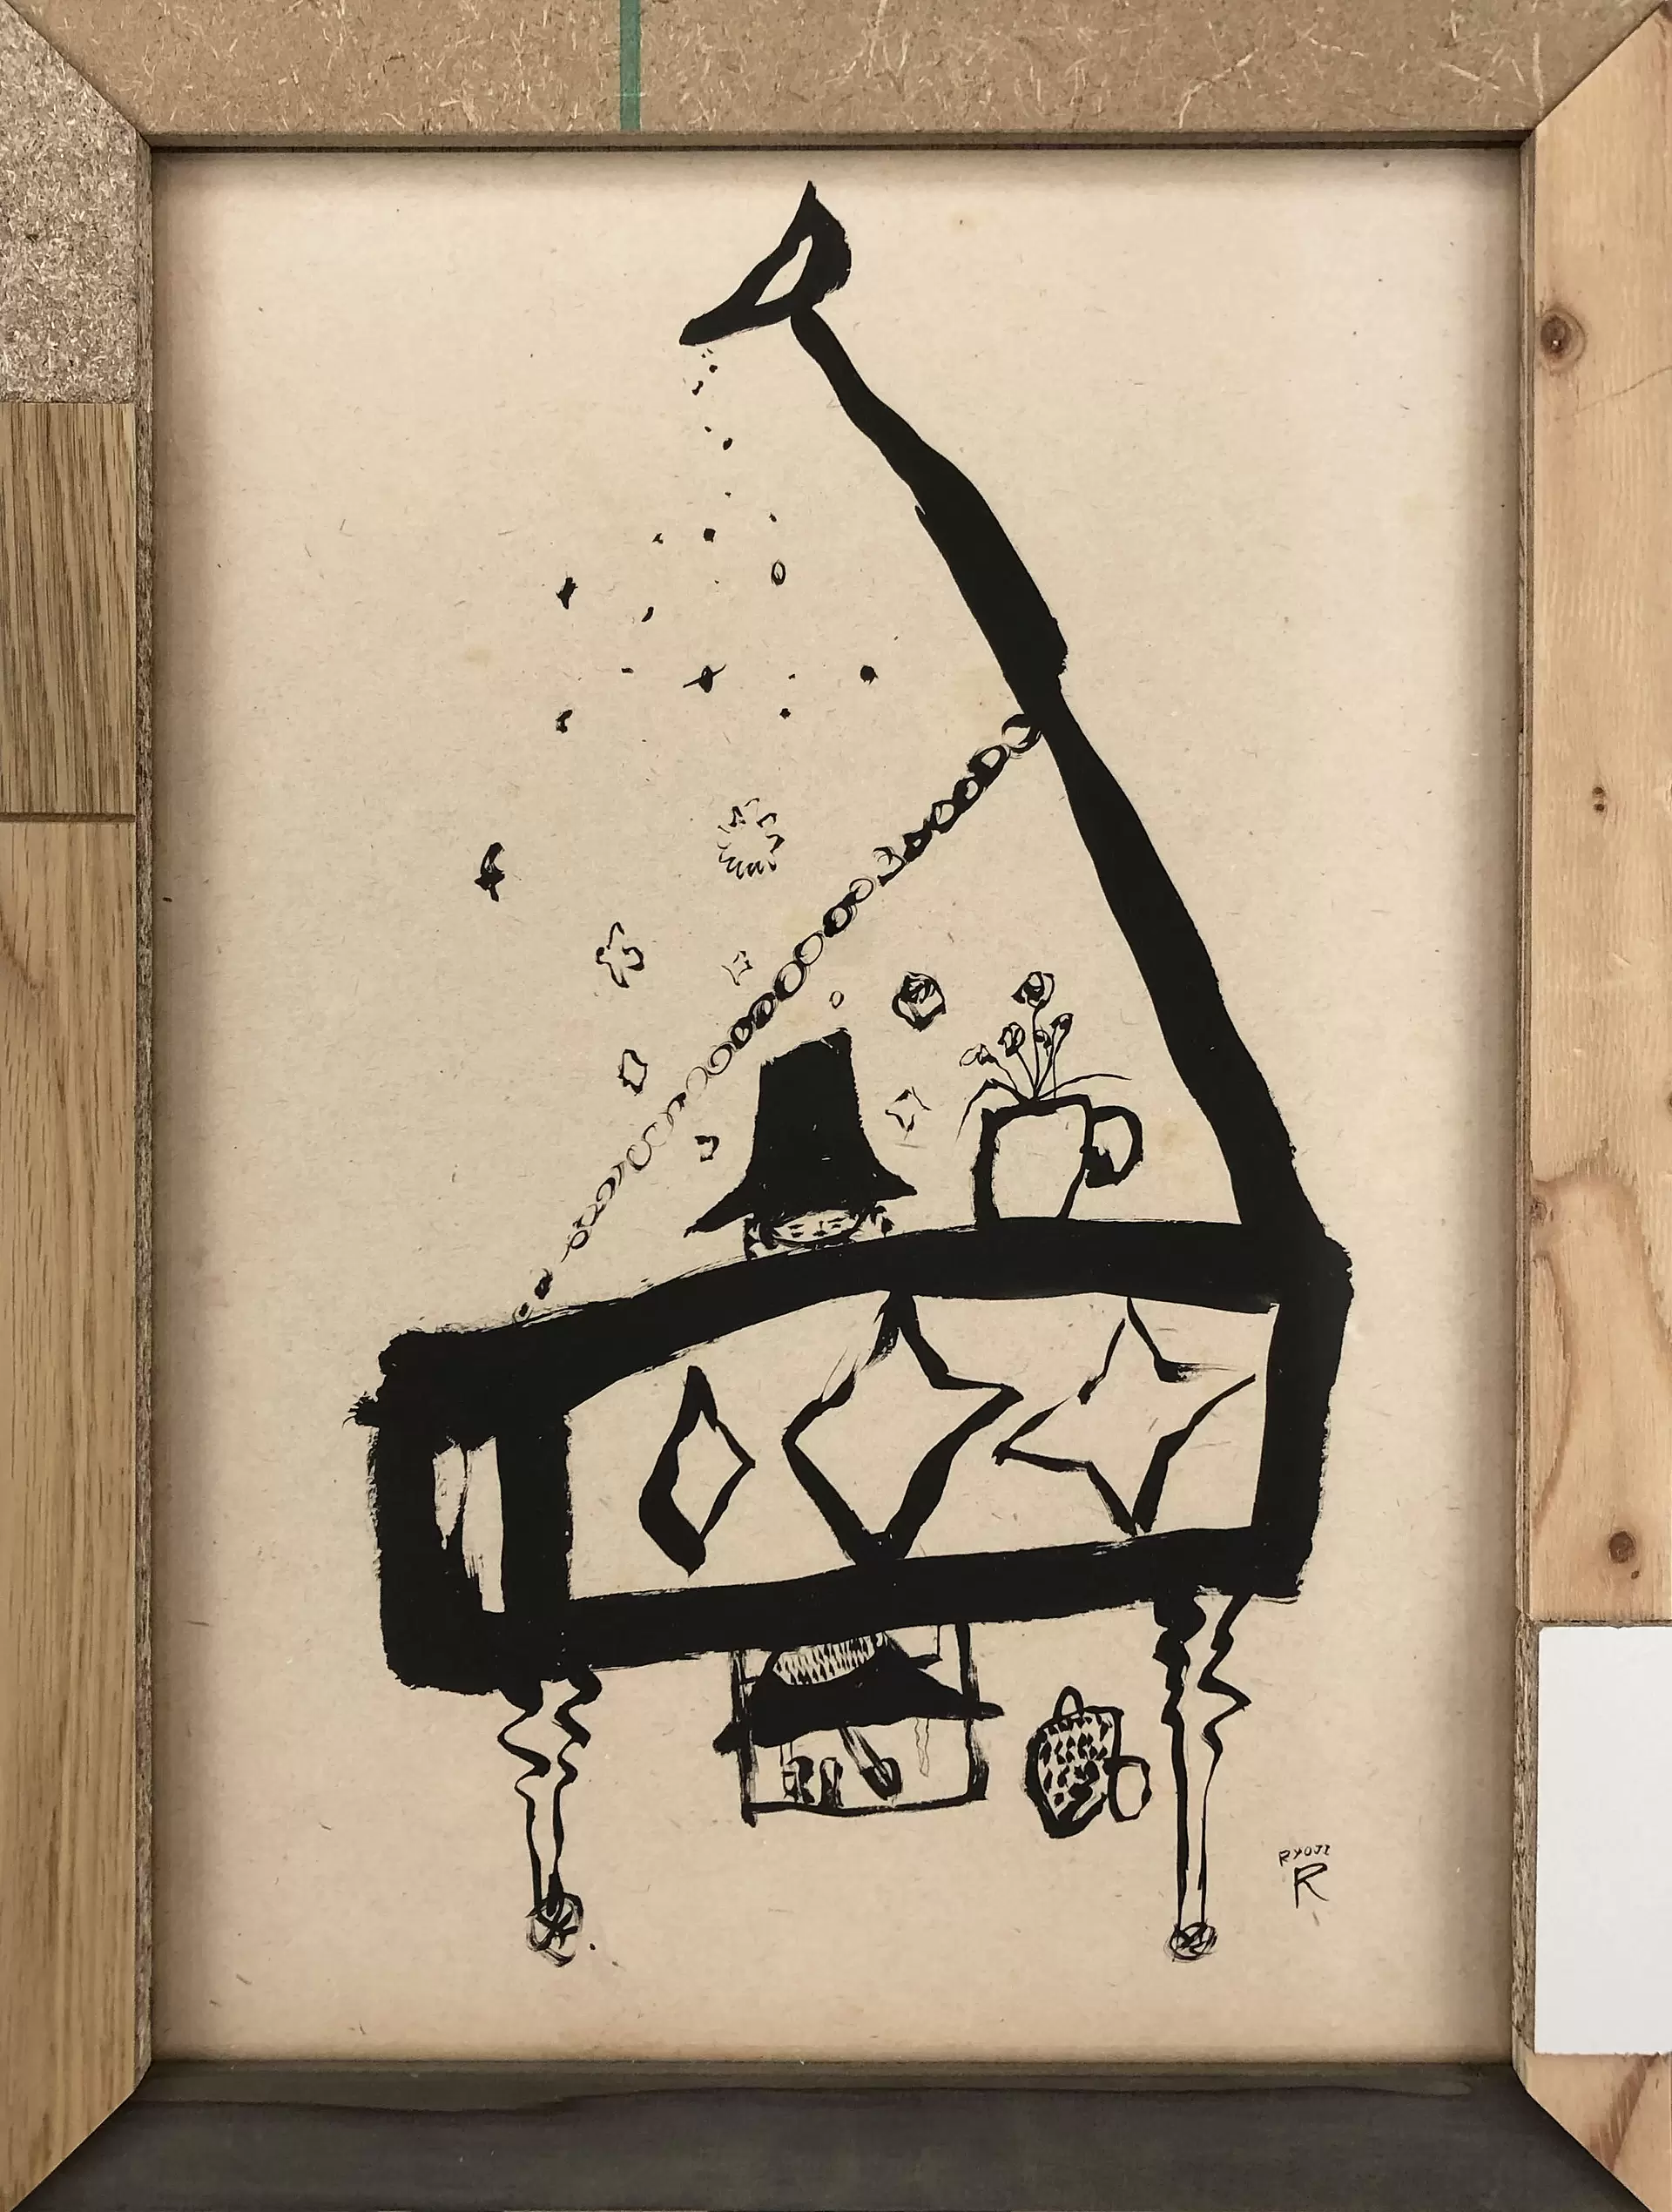 new born - drawings #49 - 夜のピアノと時間 by 荒井 良二 | 現代 